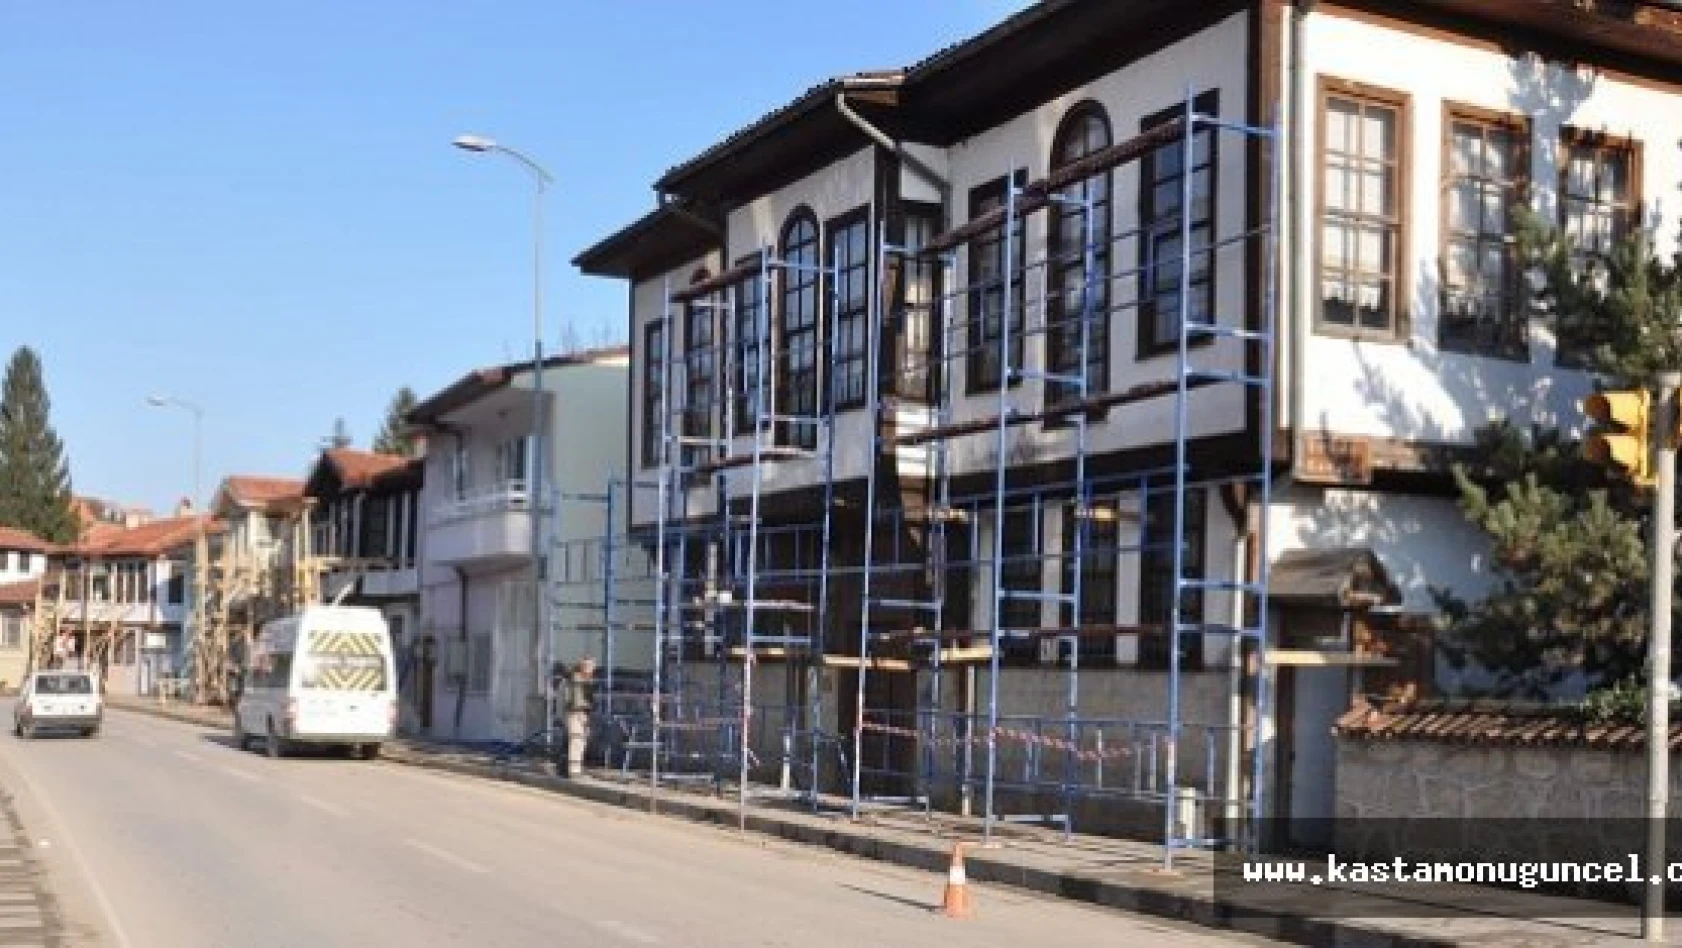 Kastamonu'da Tarihi Konaklar Ayağa Kaldırılıyor